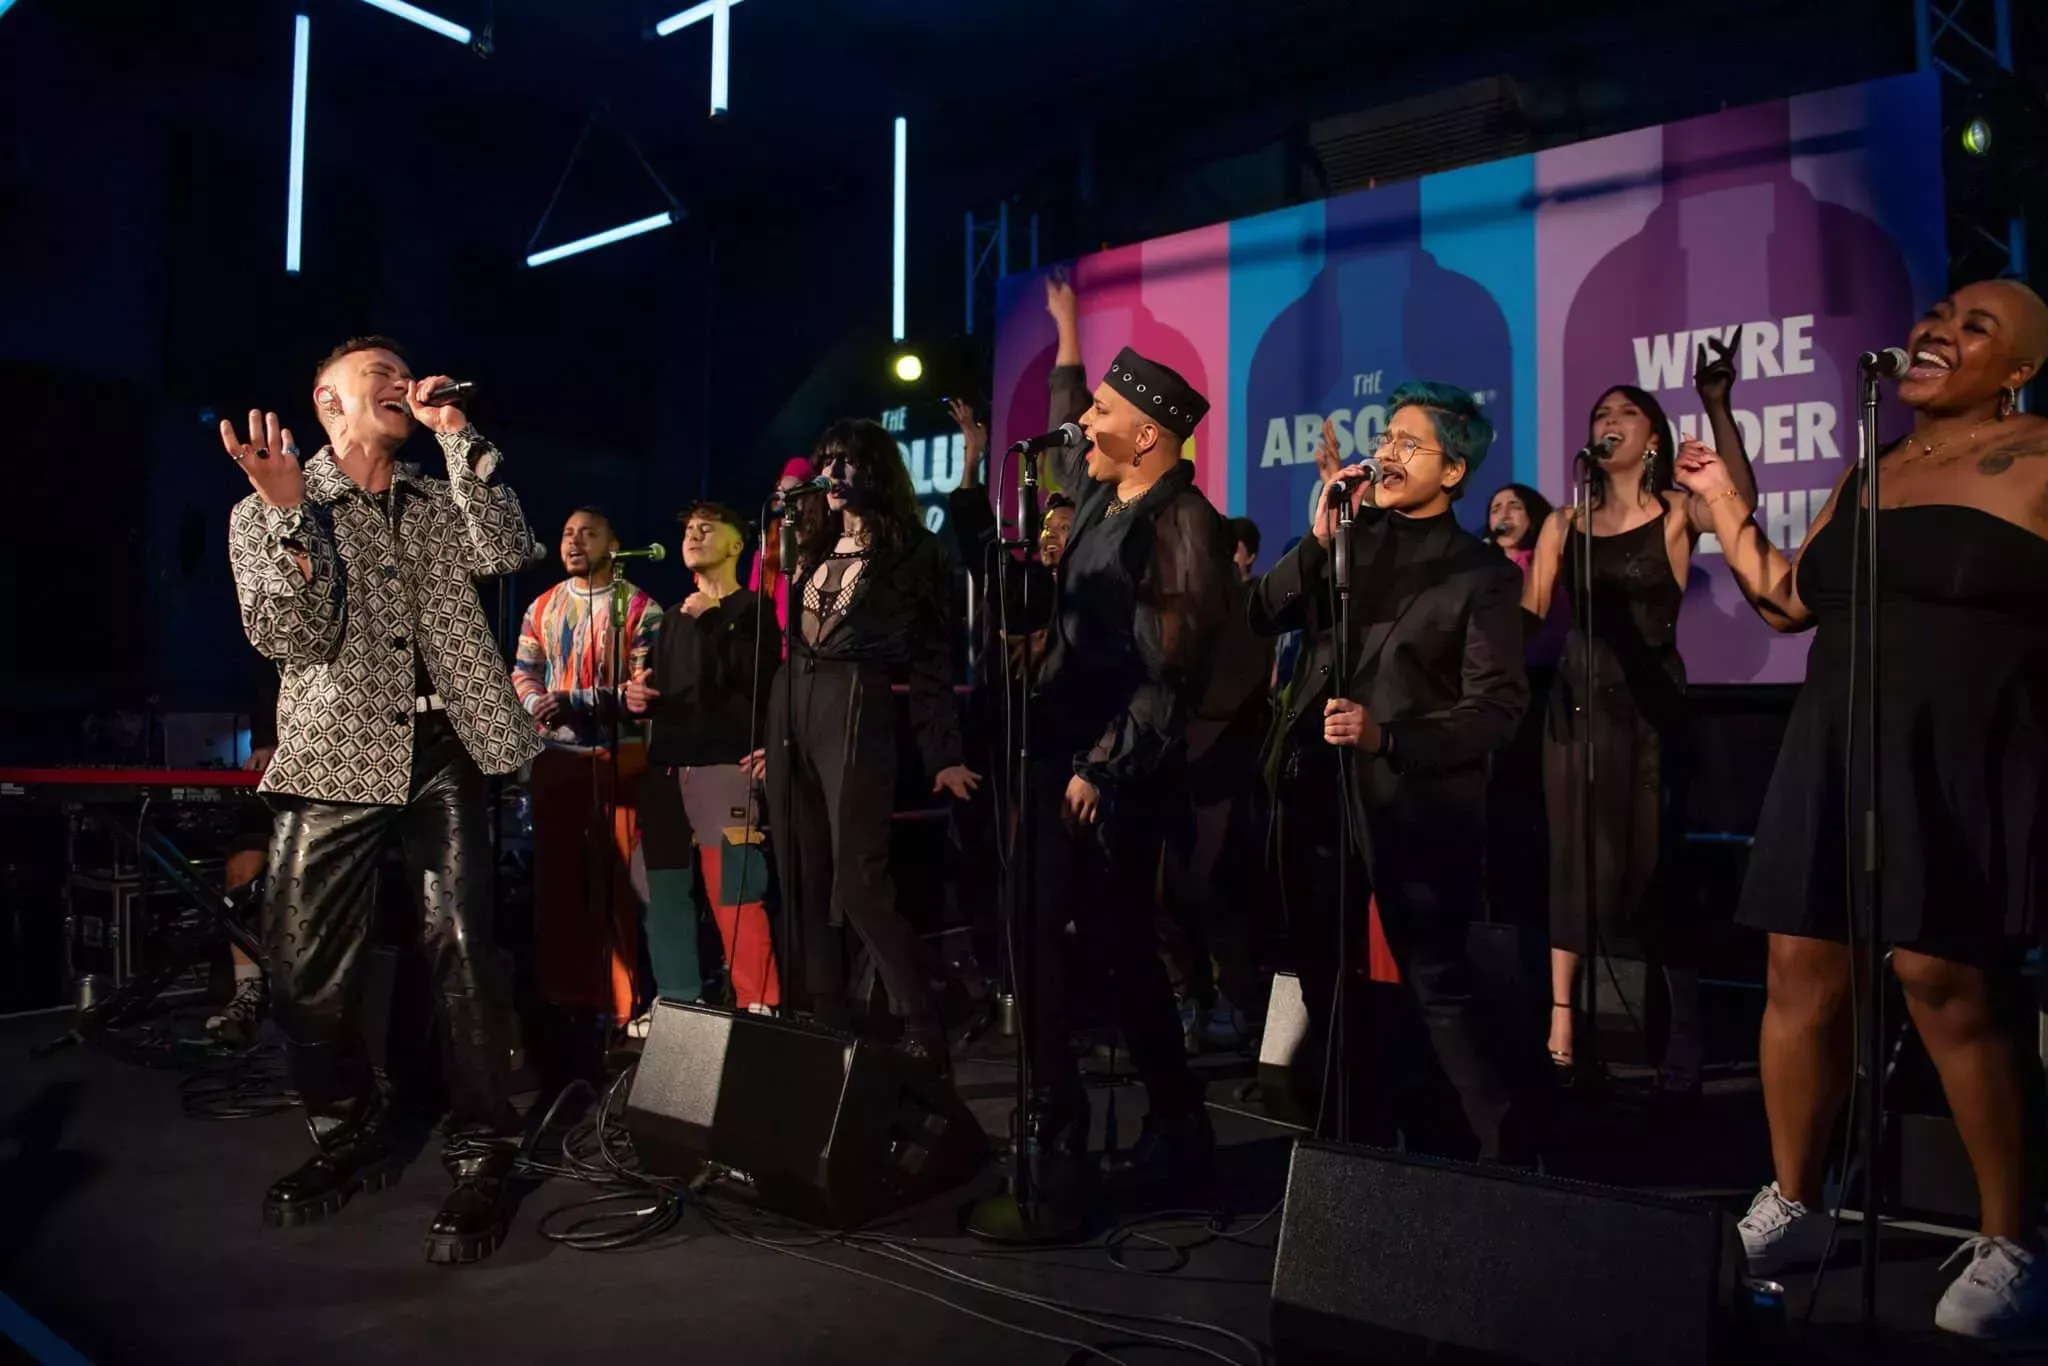 El coro LGBTQ+ se une a Olly Alexander en una electrizante actuación